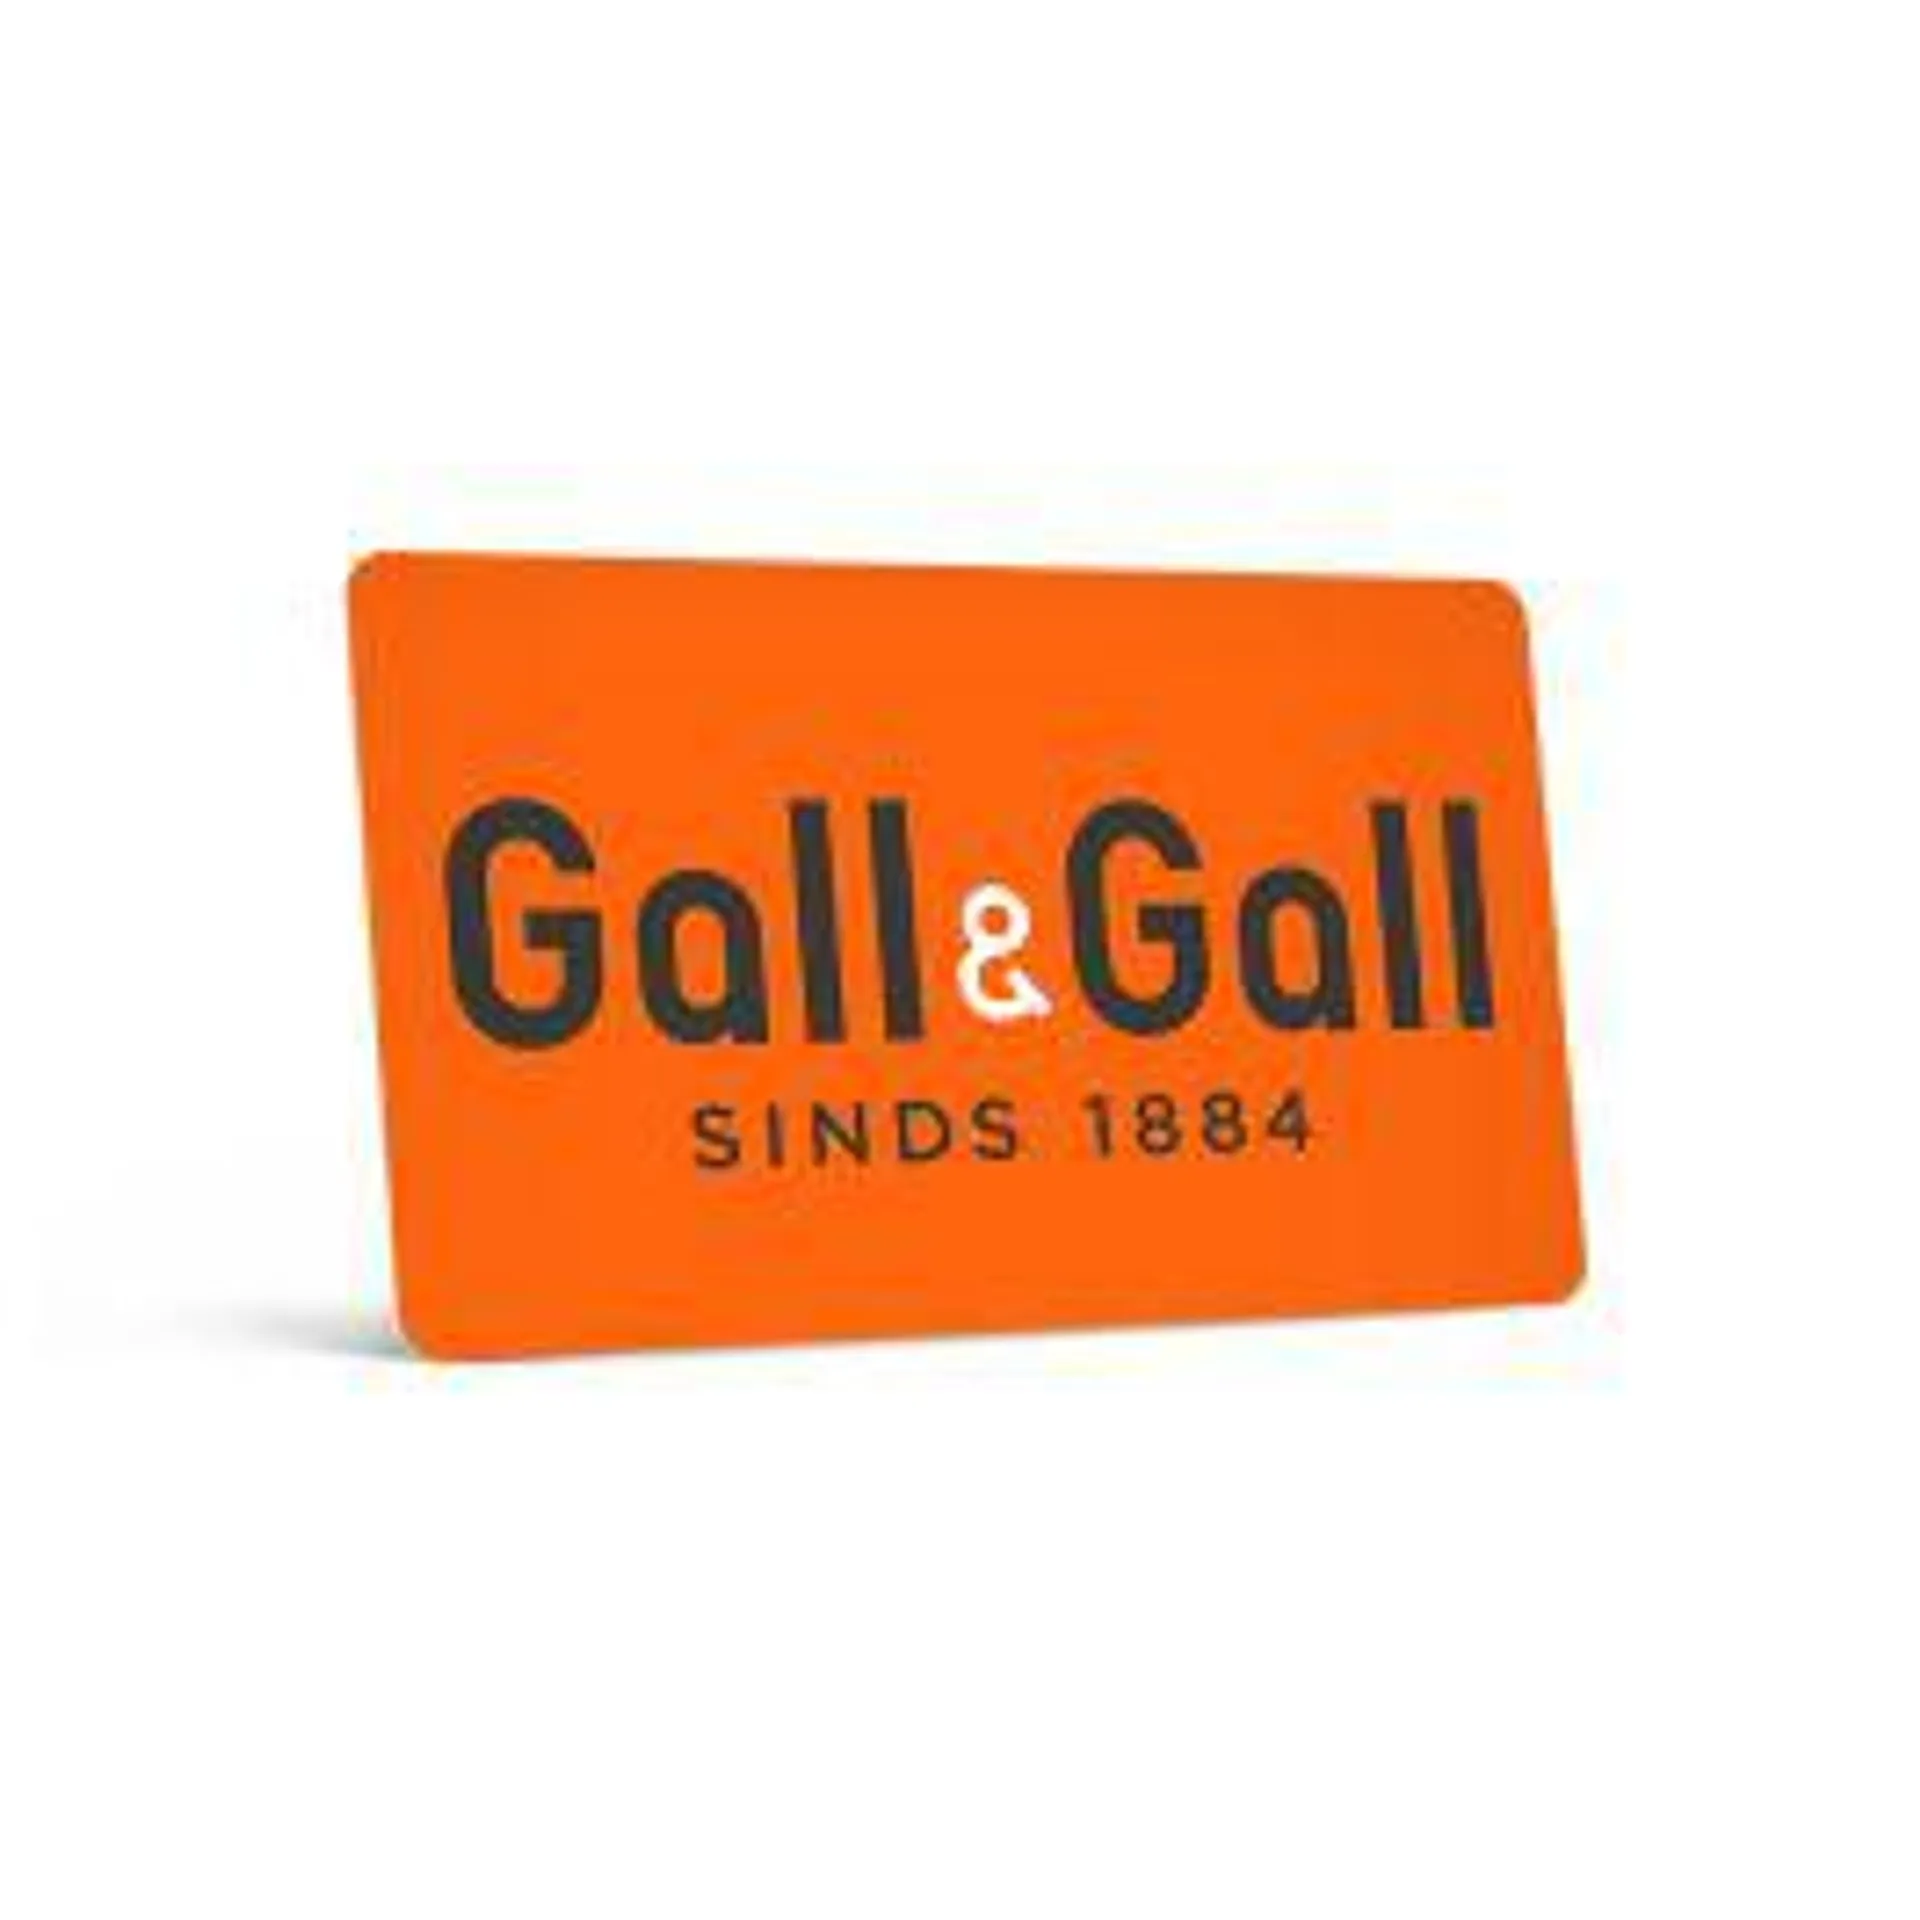 Gall & Gall cadeaukaart